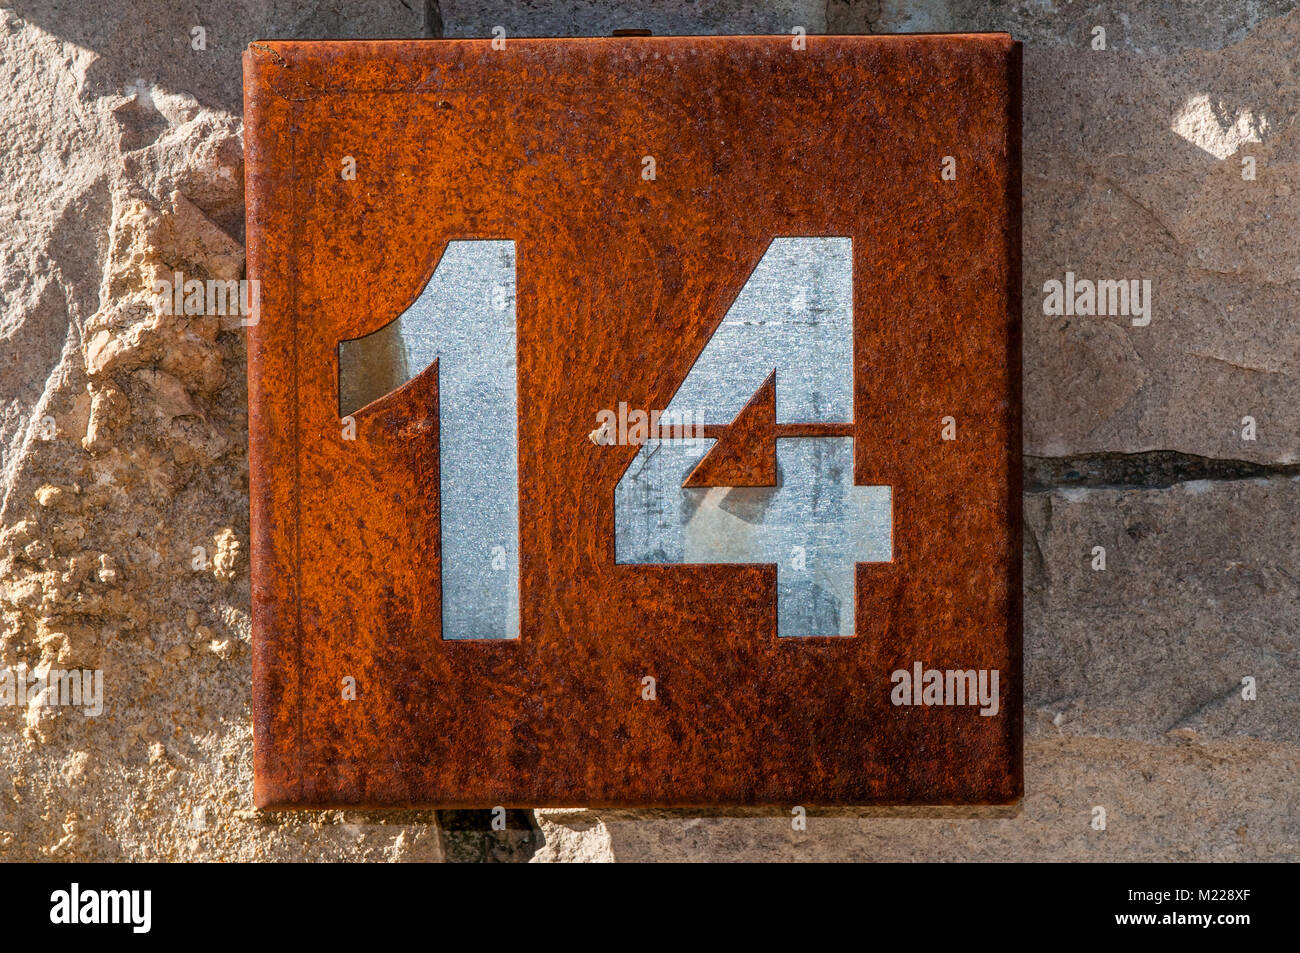 Hausnummer 14 auf eine rostige Metallplatte hangin auf einer Steinmauer, Tavertet, Katalonien, Spanien Stockfoto